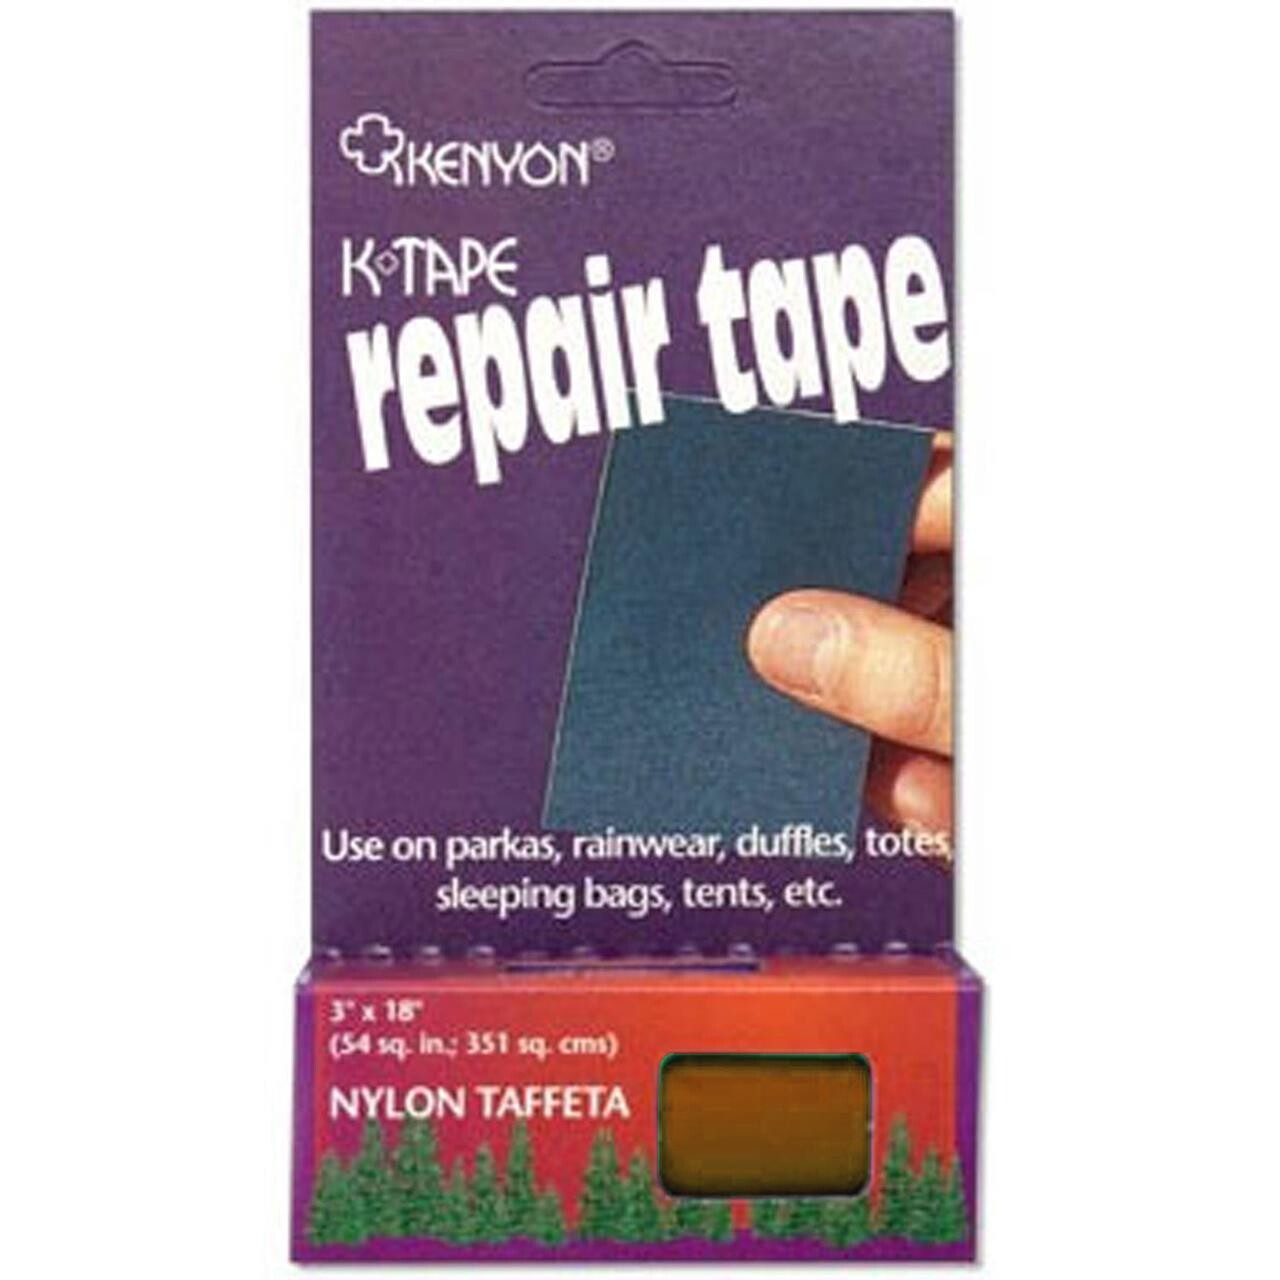 Kenyon Repair tape Ripstop 3x18" (Rød (RUST))